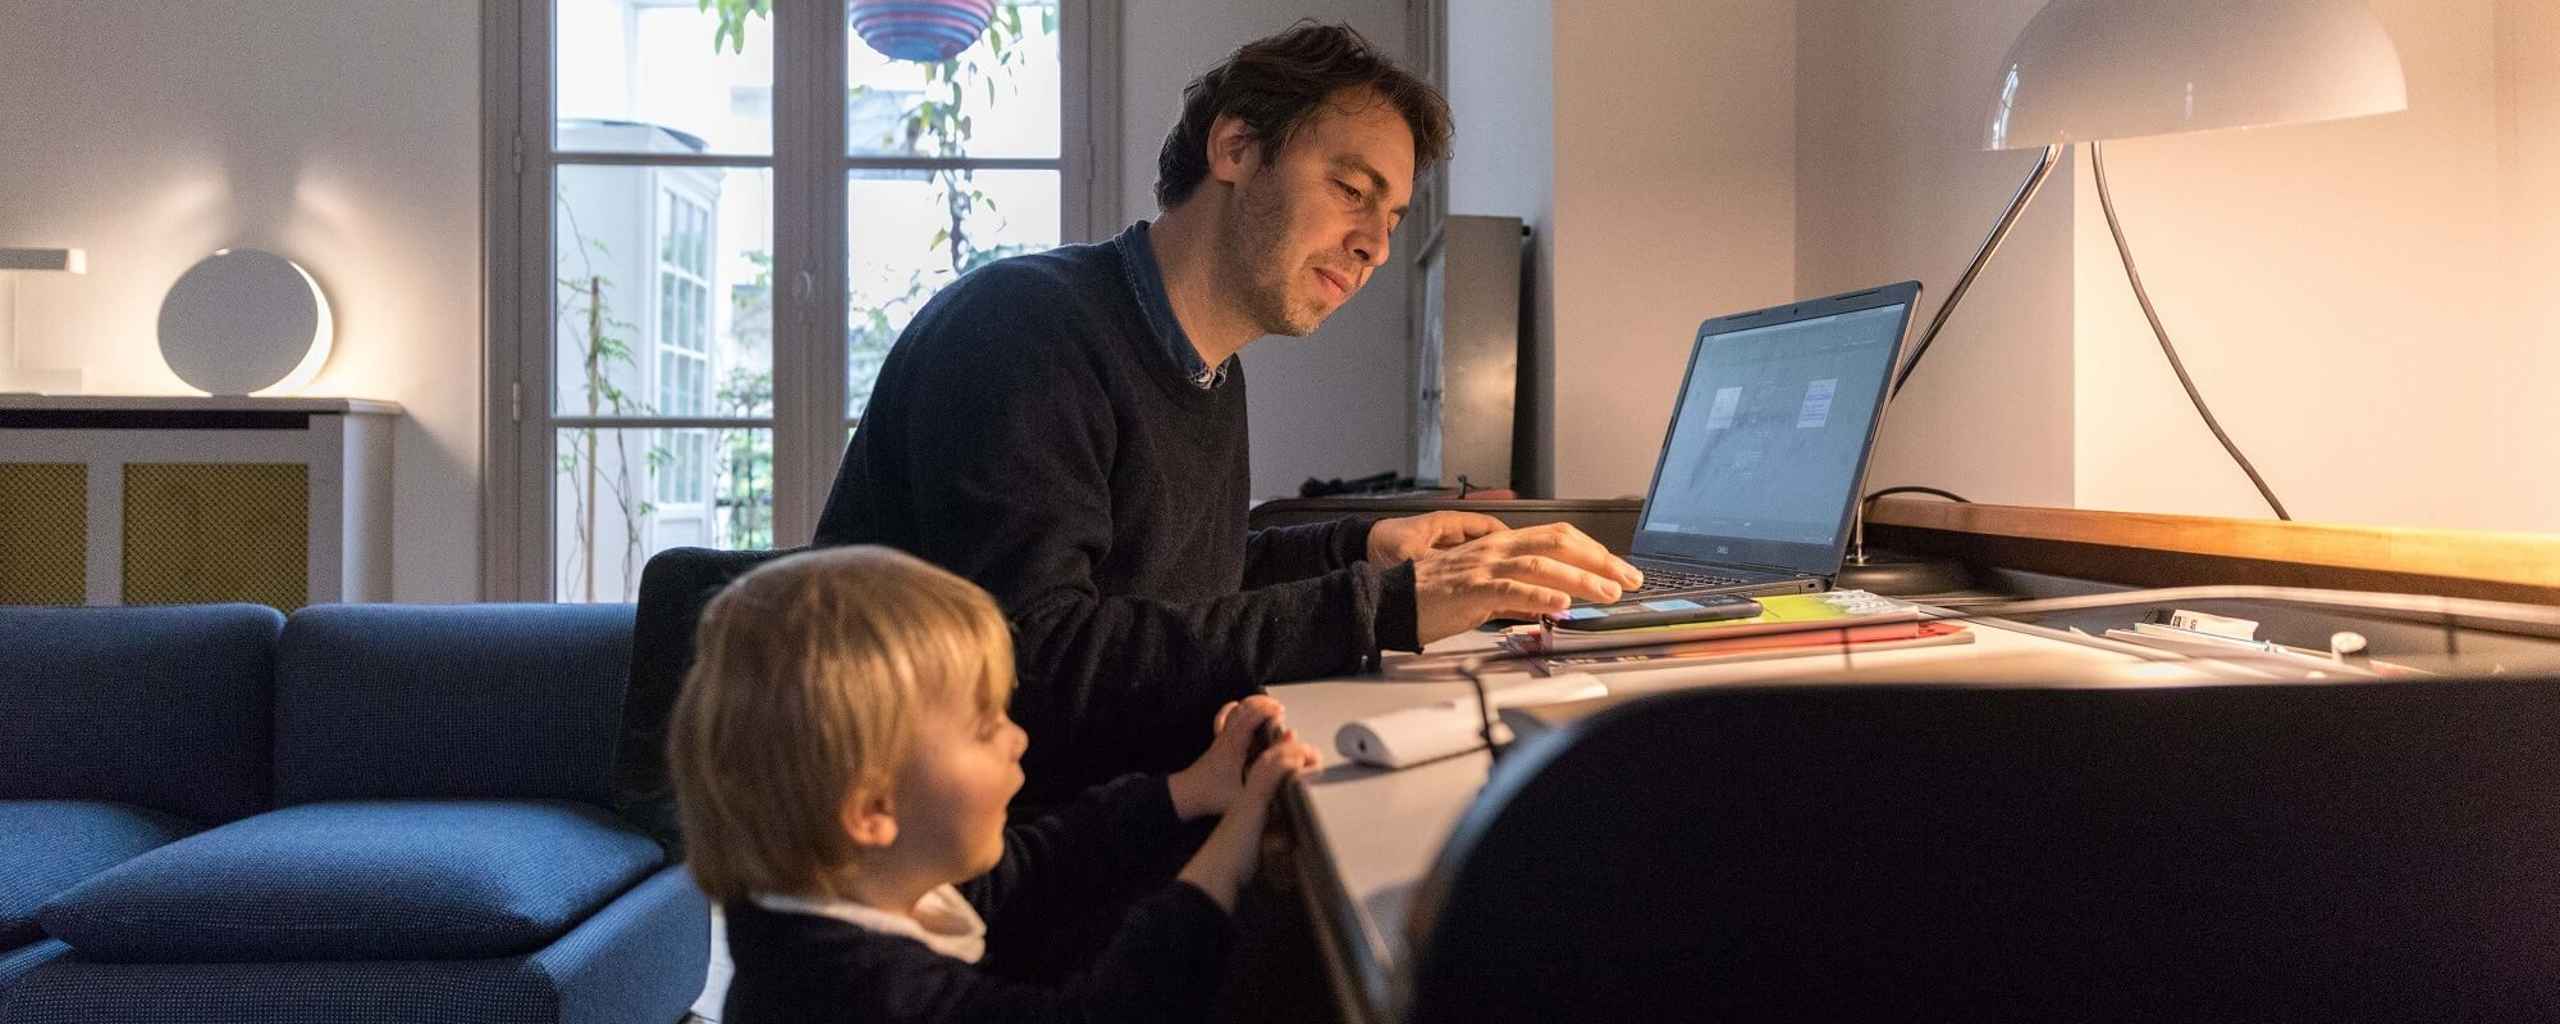 Julien met zoon bij computer